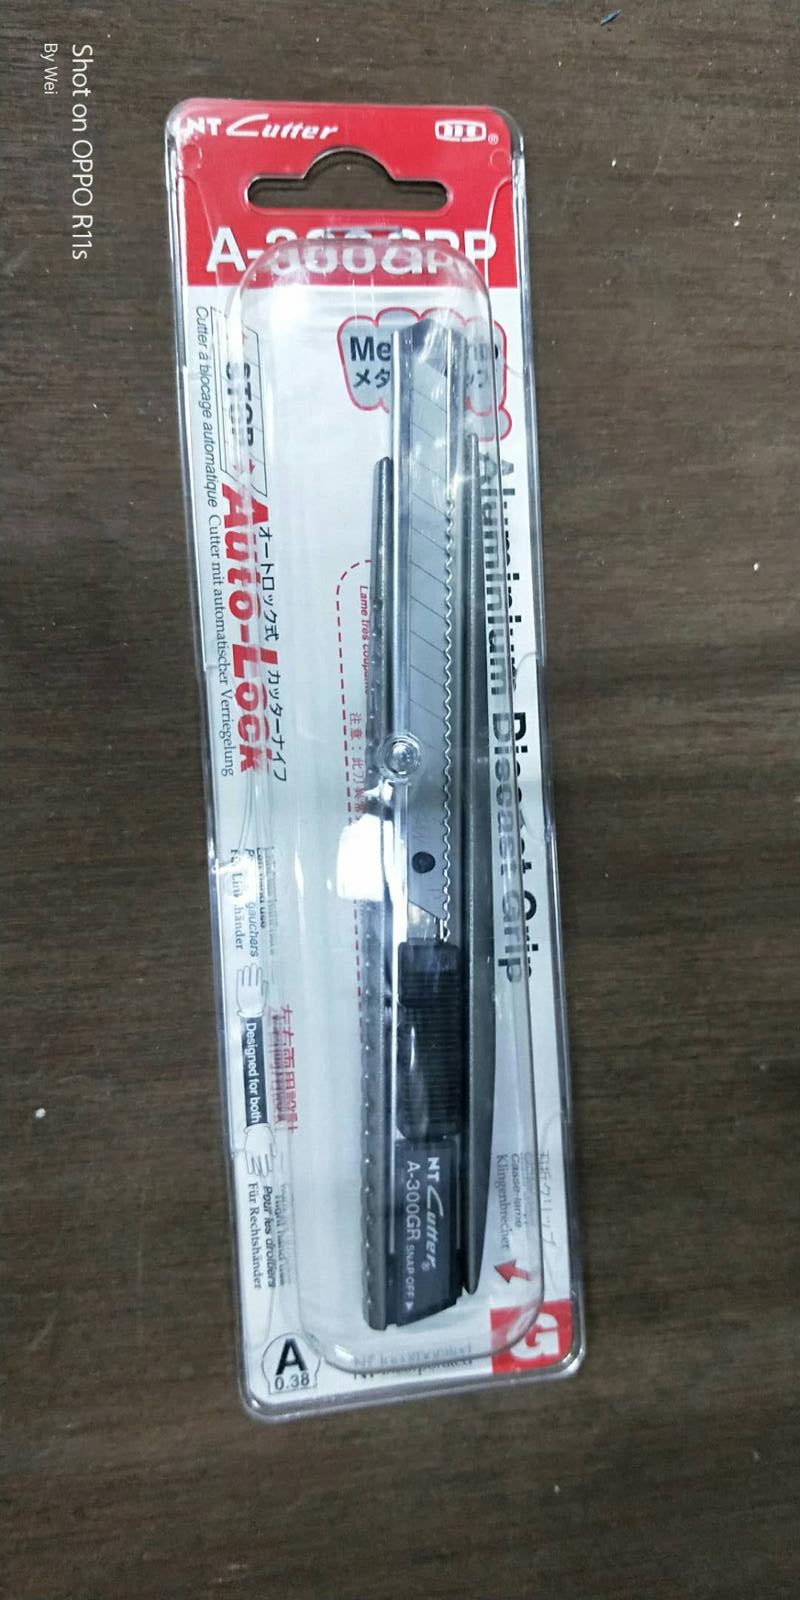 NT Cutter Aluminium Casing Penknife | Model : PK-A300GRP (A-300GRP) Pen Knife NT Cutter 